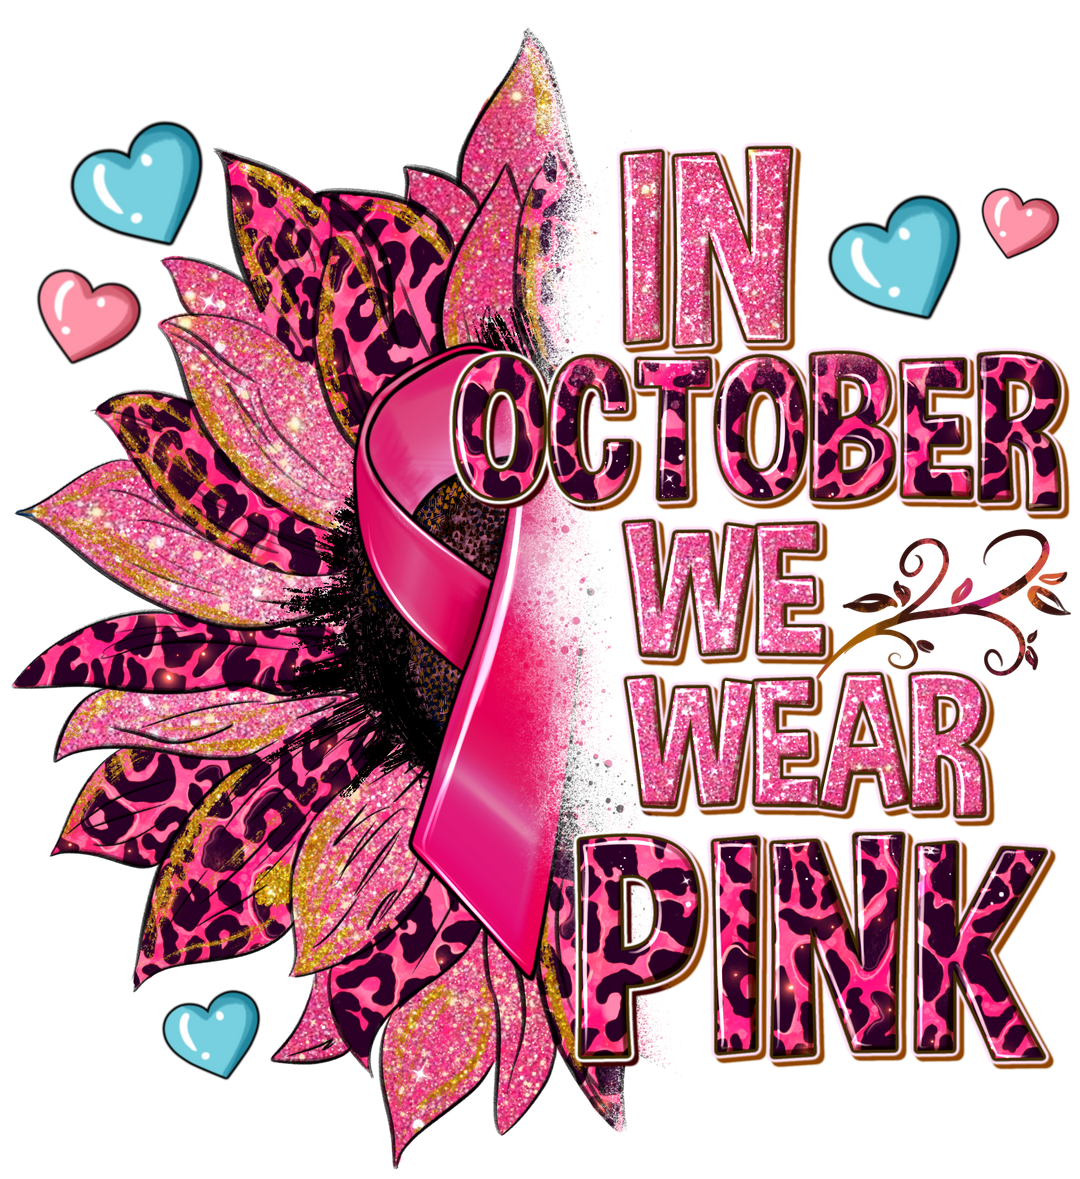 In October We Wear Pink Cancer Support Design - DTF heat transfer - Transfer Kingdom